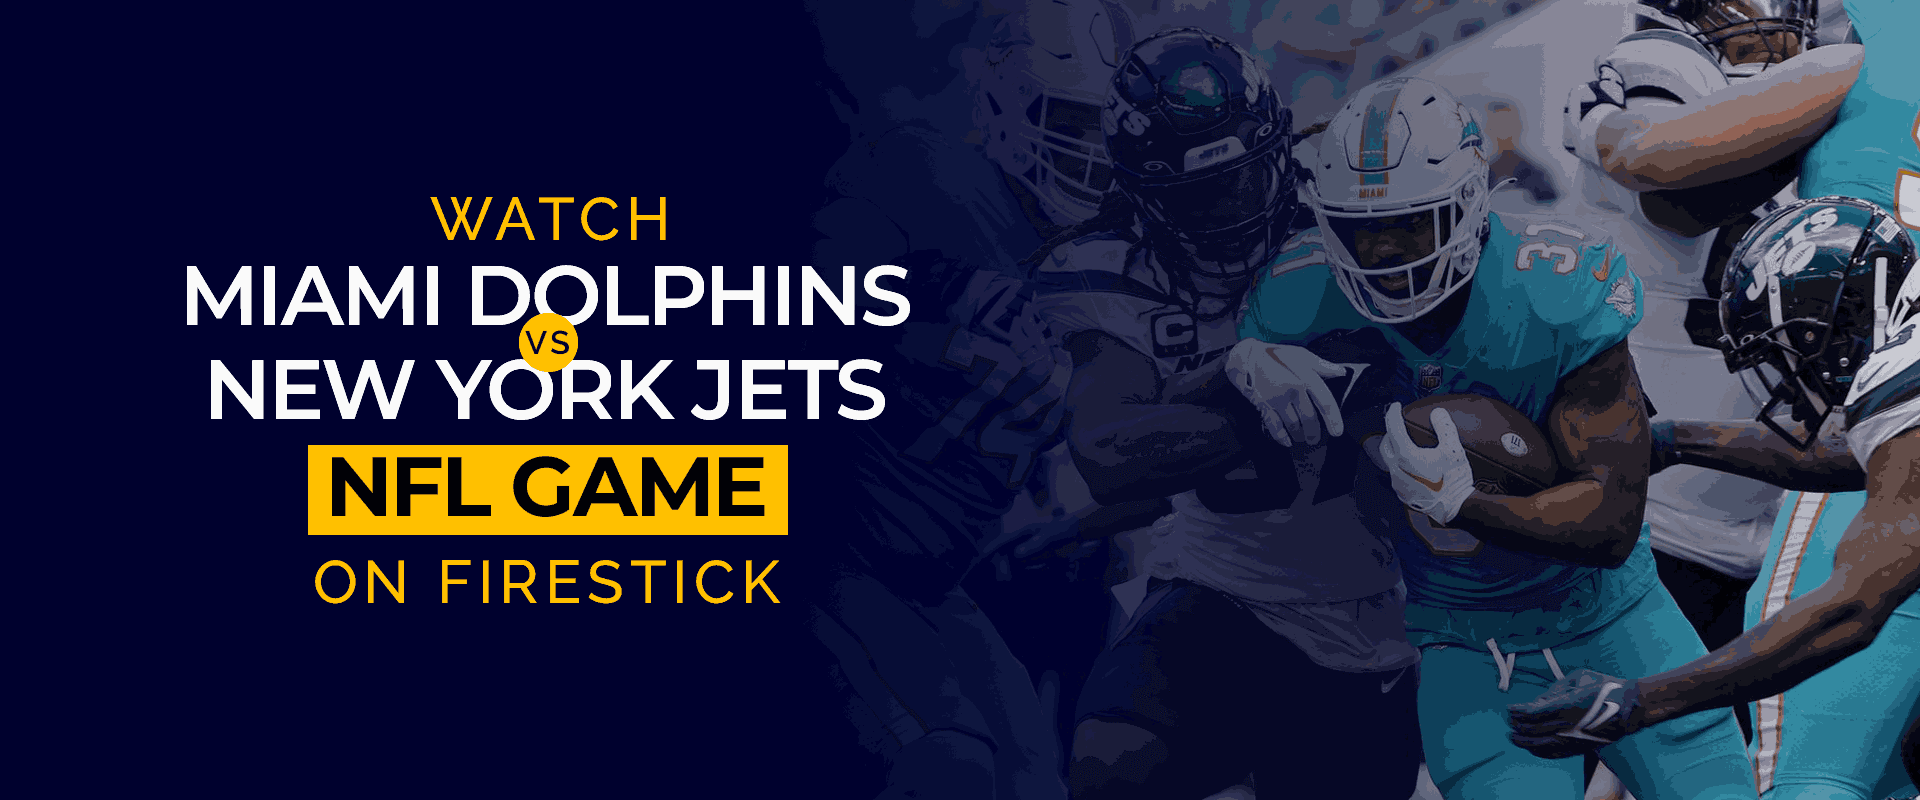 NFL マイアミ ドルフィンズ対ニューヨーク ジェッツの試合を Firestick でライブ観戦